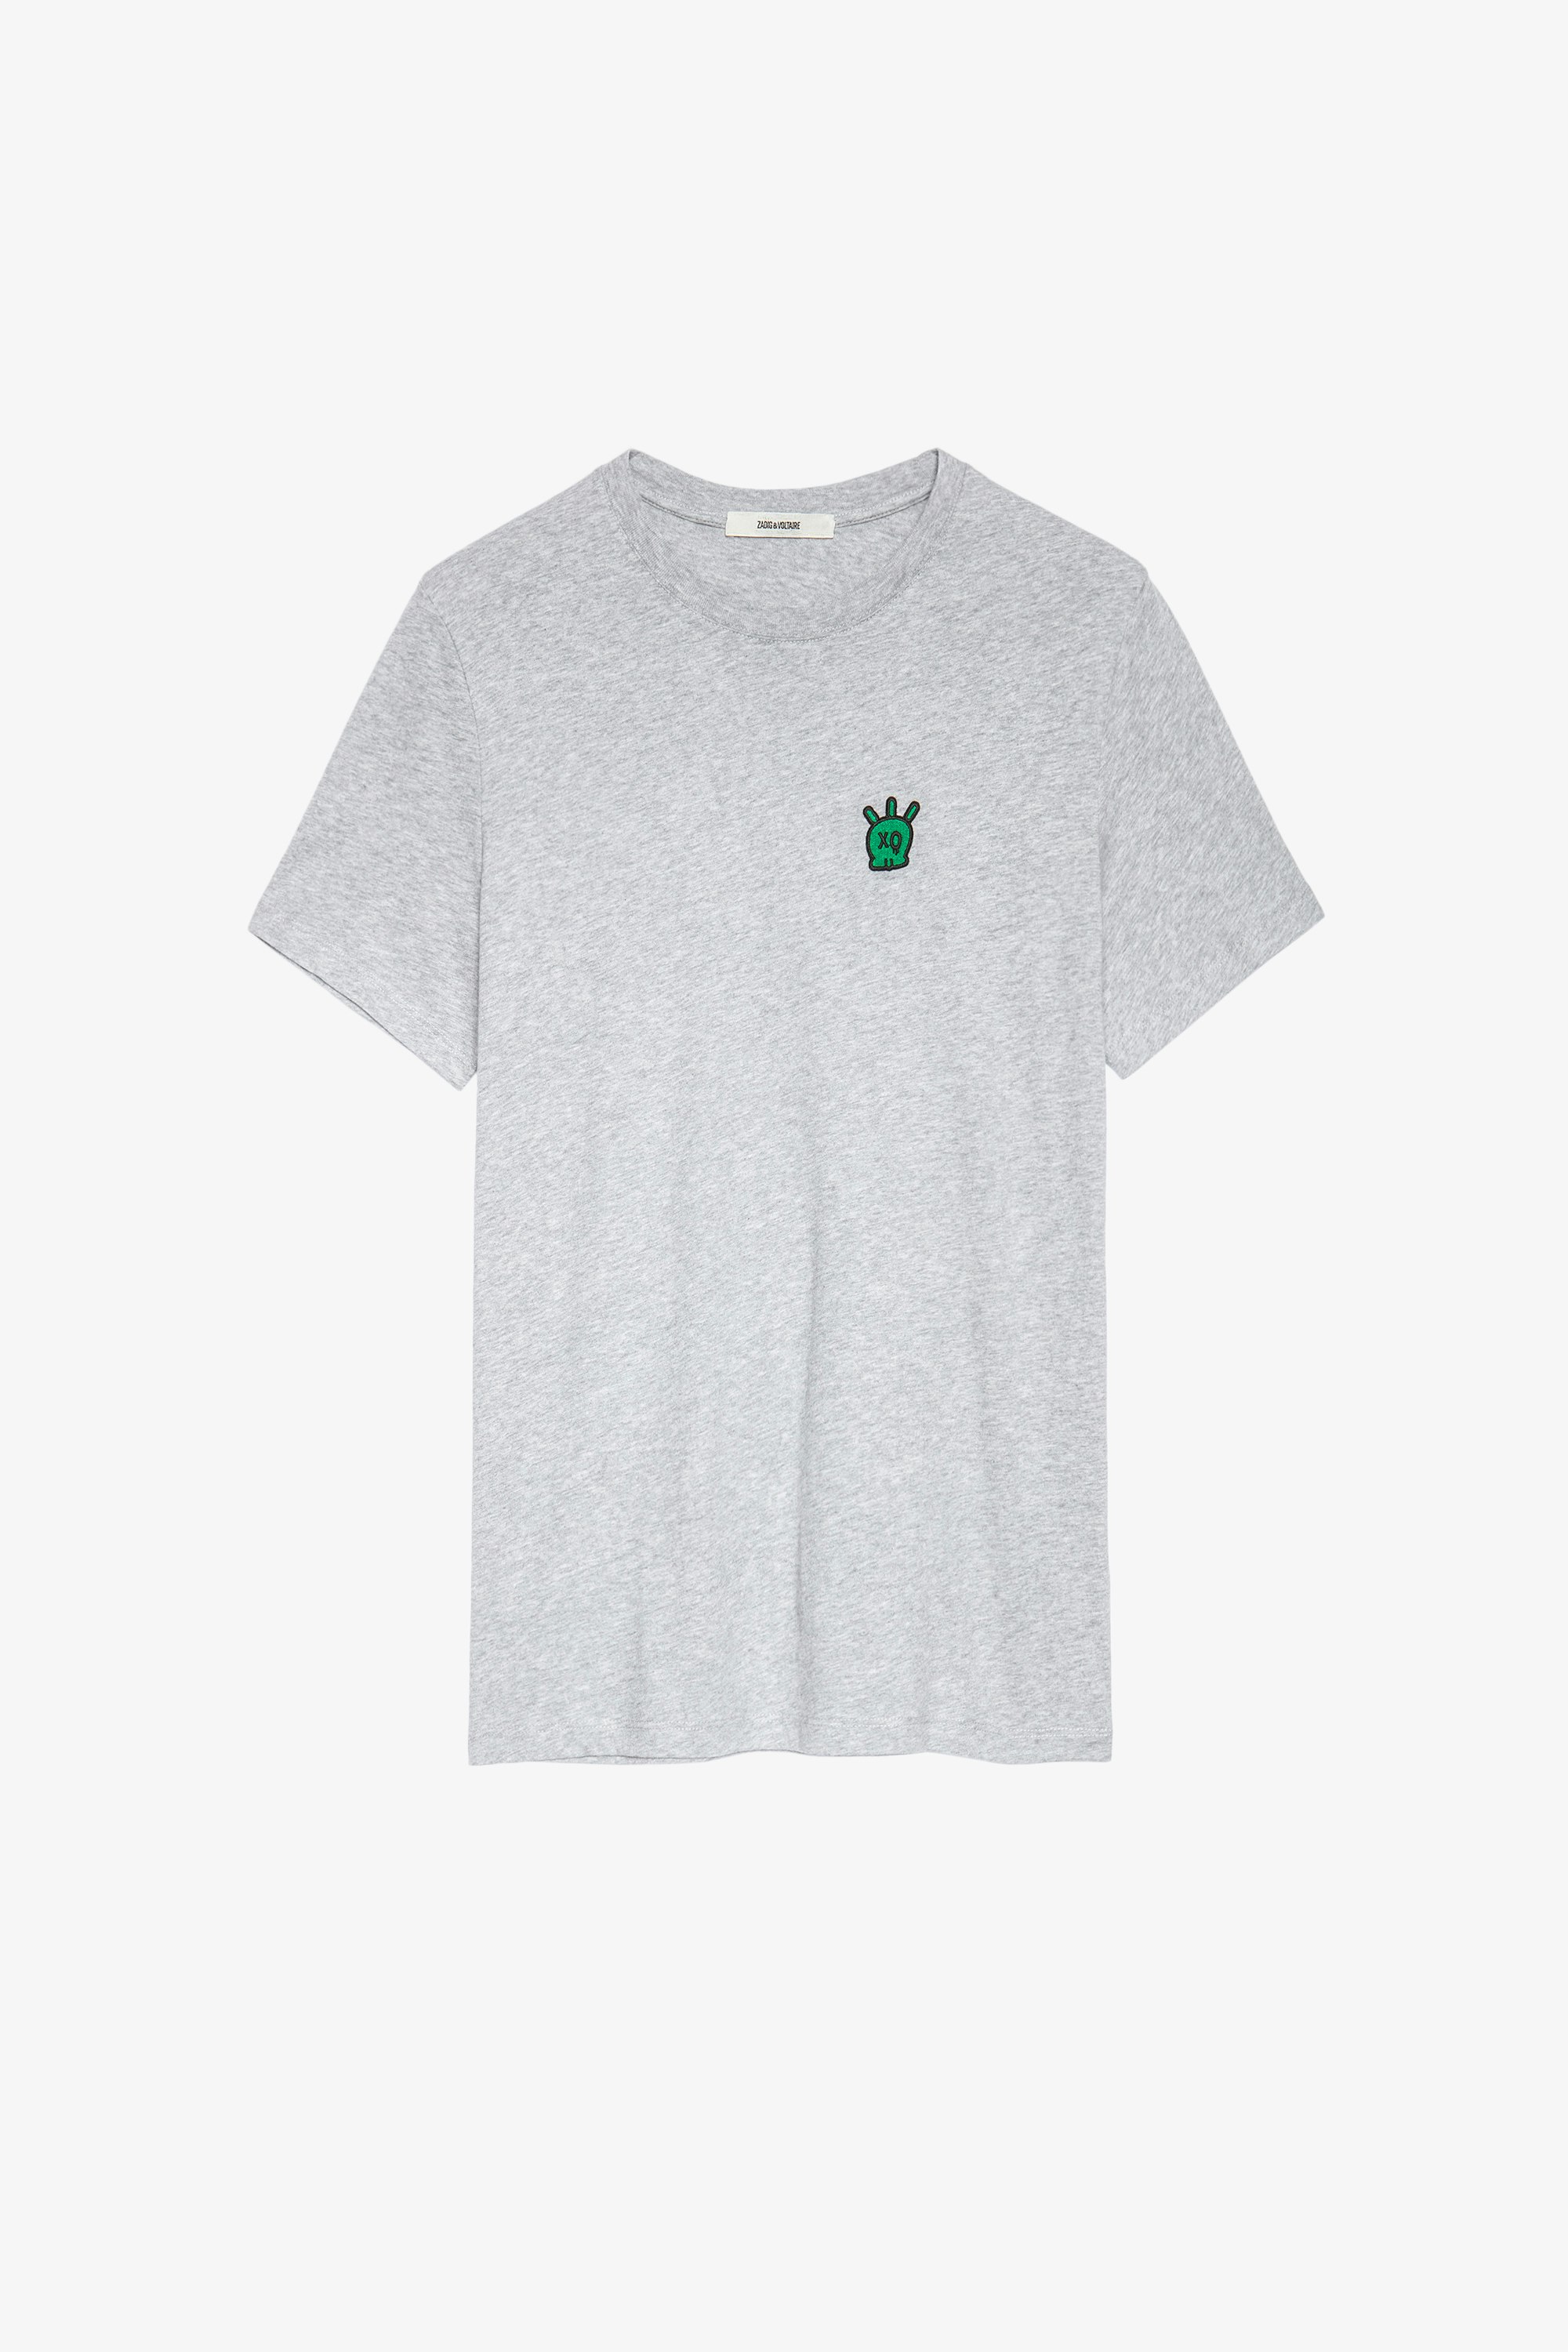 Camiseta calavera Tommy Camiseta gris jaspeada de algodón de hombre con parche de calavera. Este producto cuenta con la certificación GOTS y está confeccionado con fibras procedentes de la agricultura ecológica.